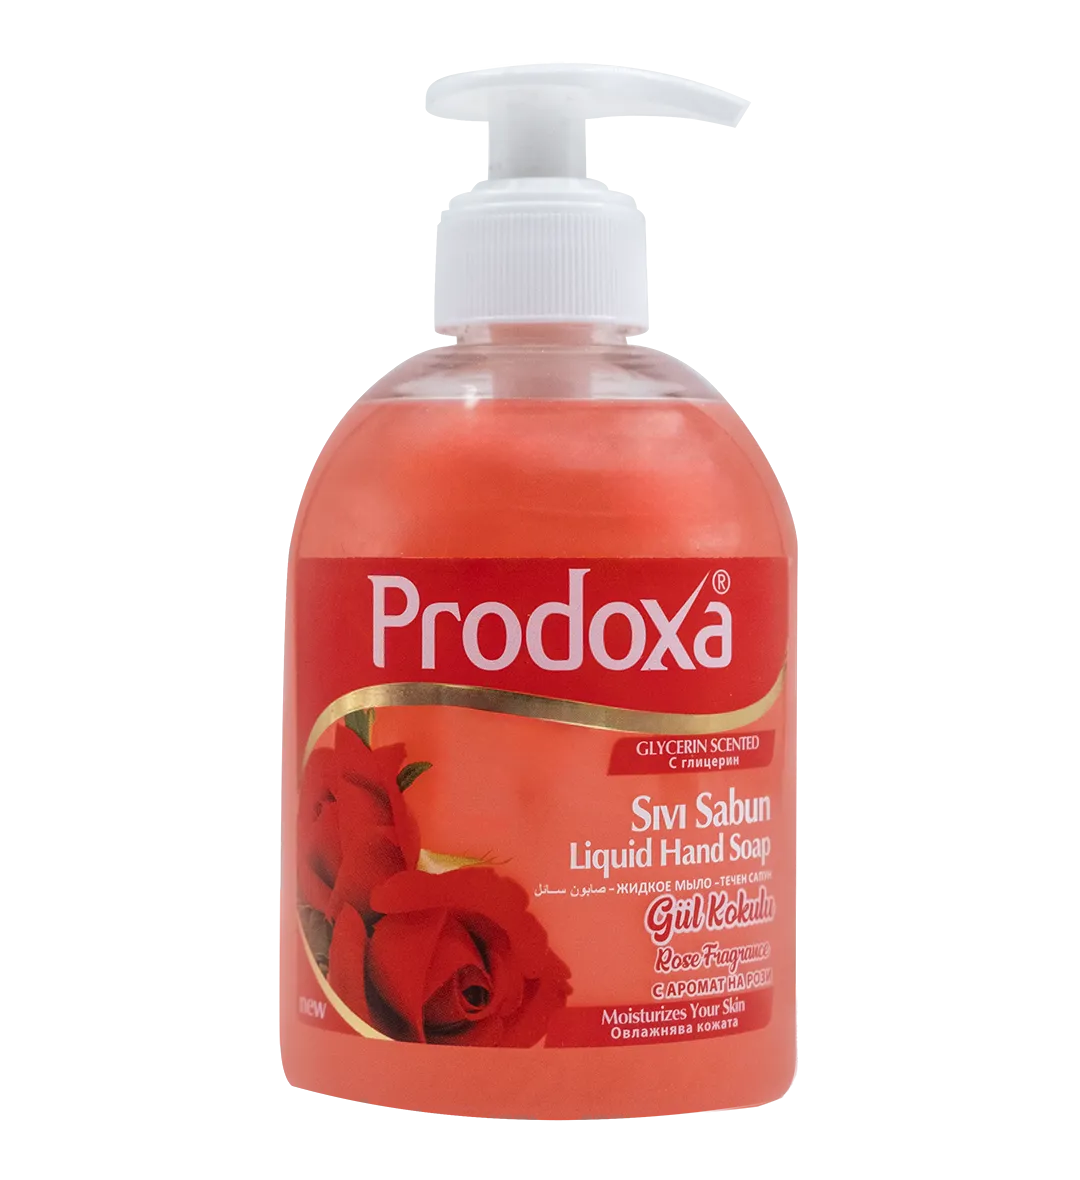 Prodoxa 400 Ml Liquid Hand Soap Rose